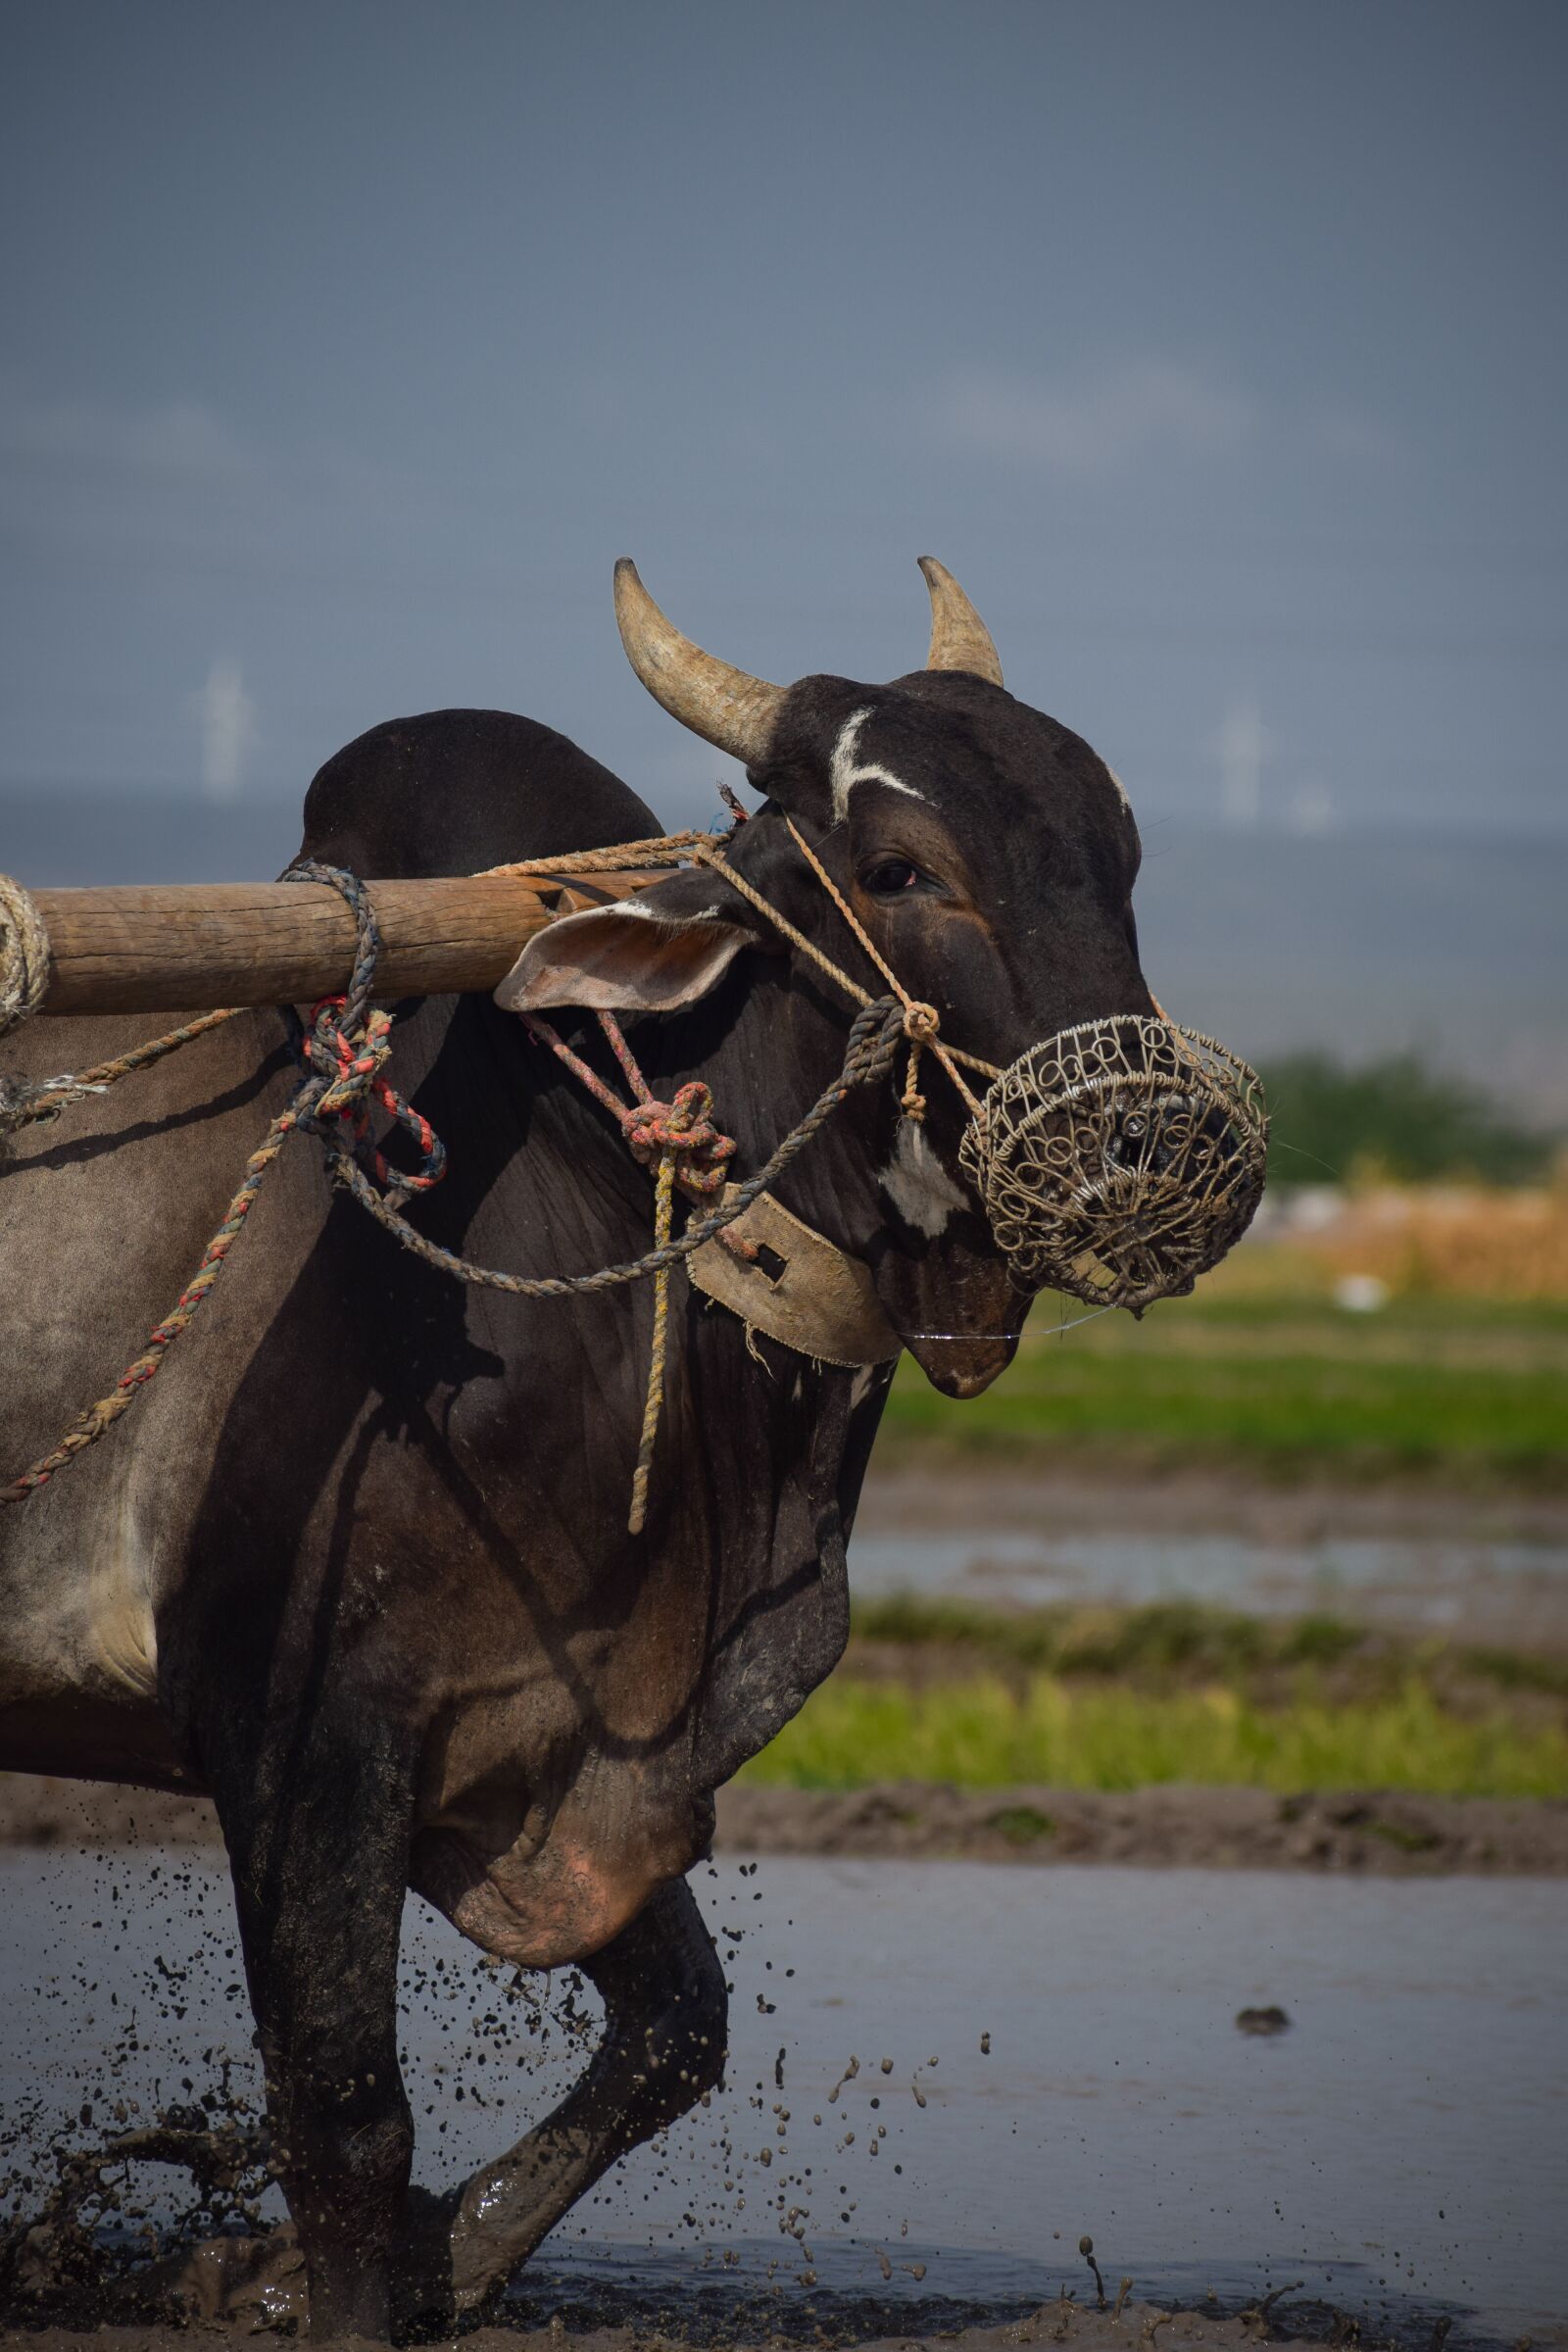 Nikon D5300 sample photo. Bull, farmer, agriculture photography